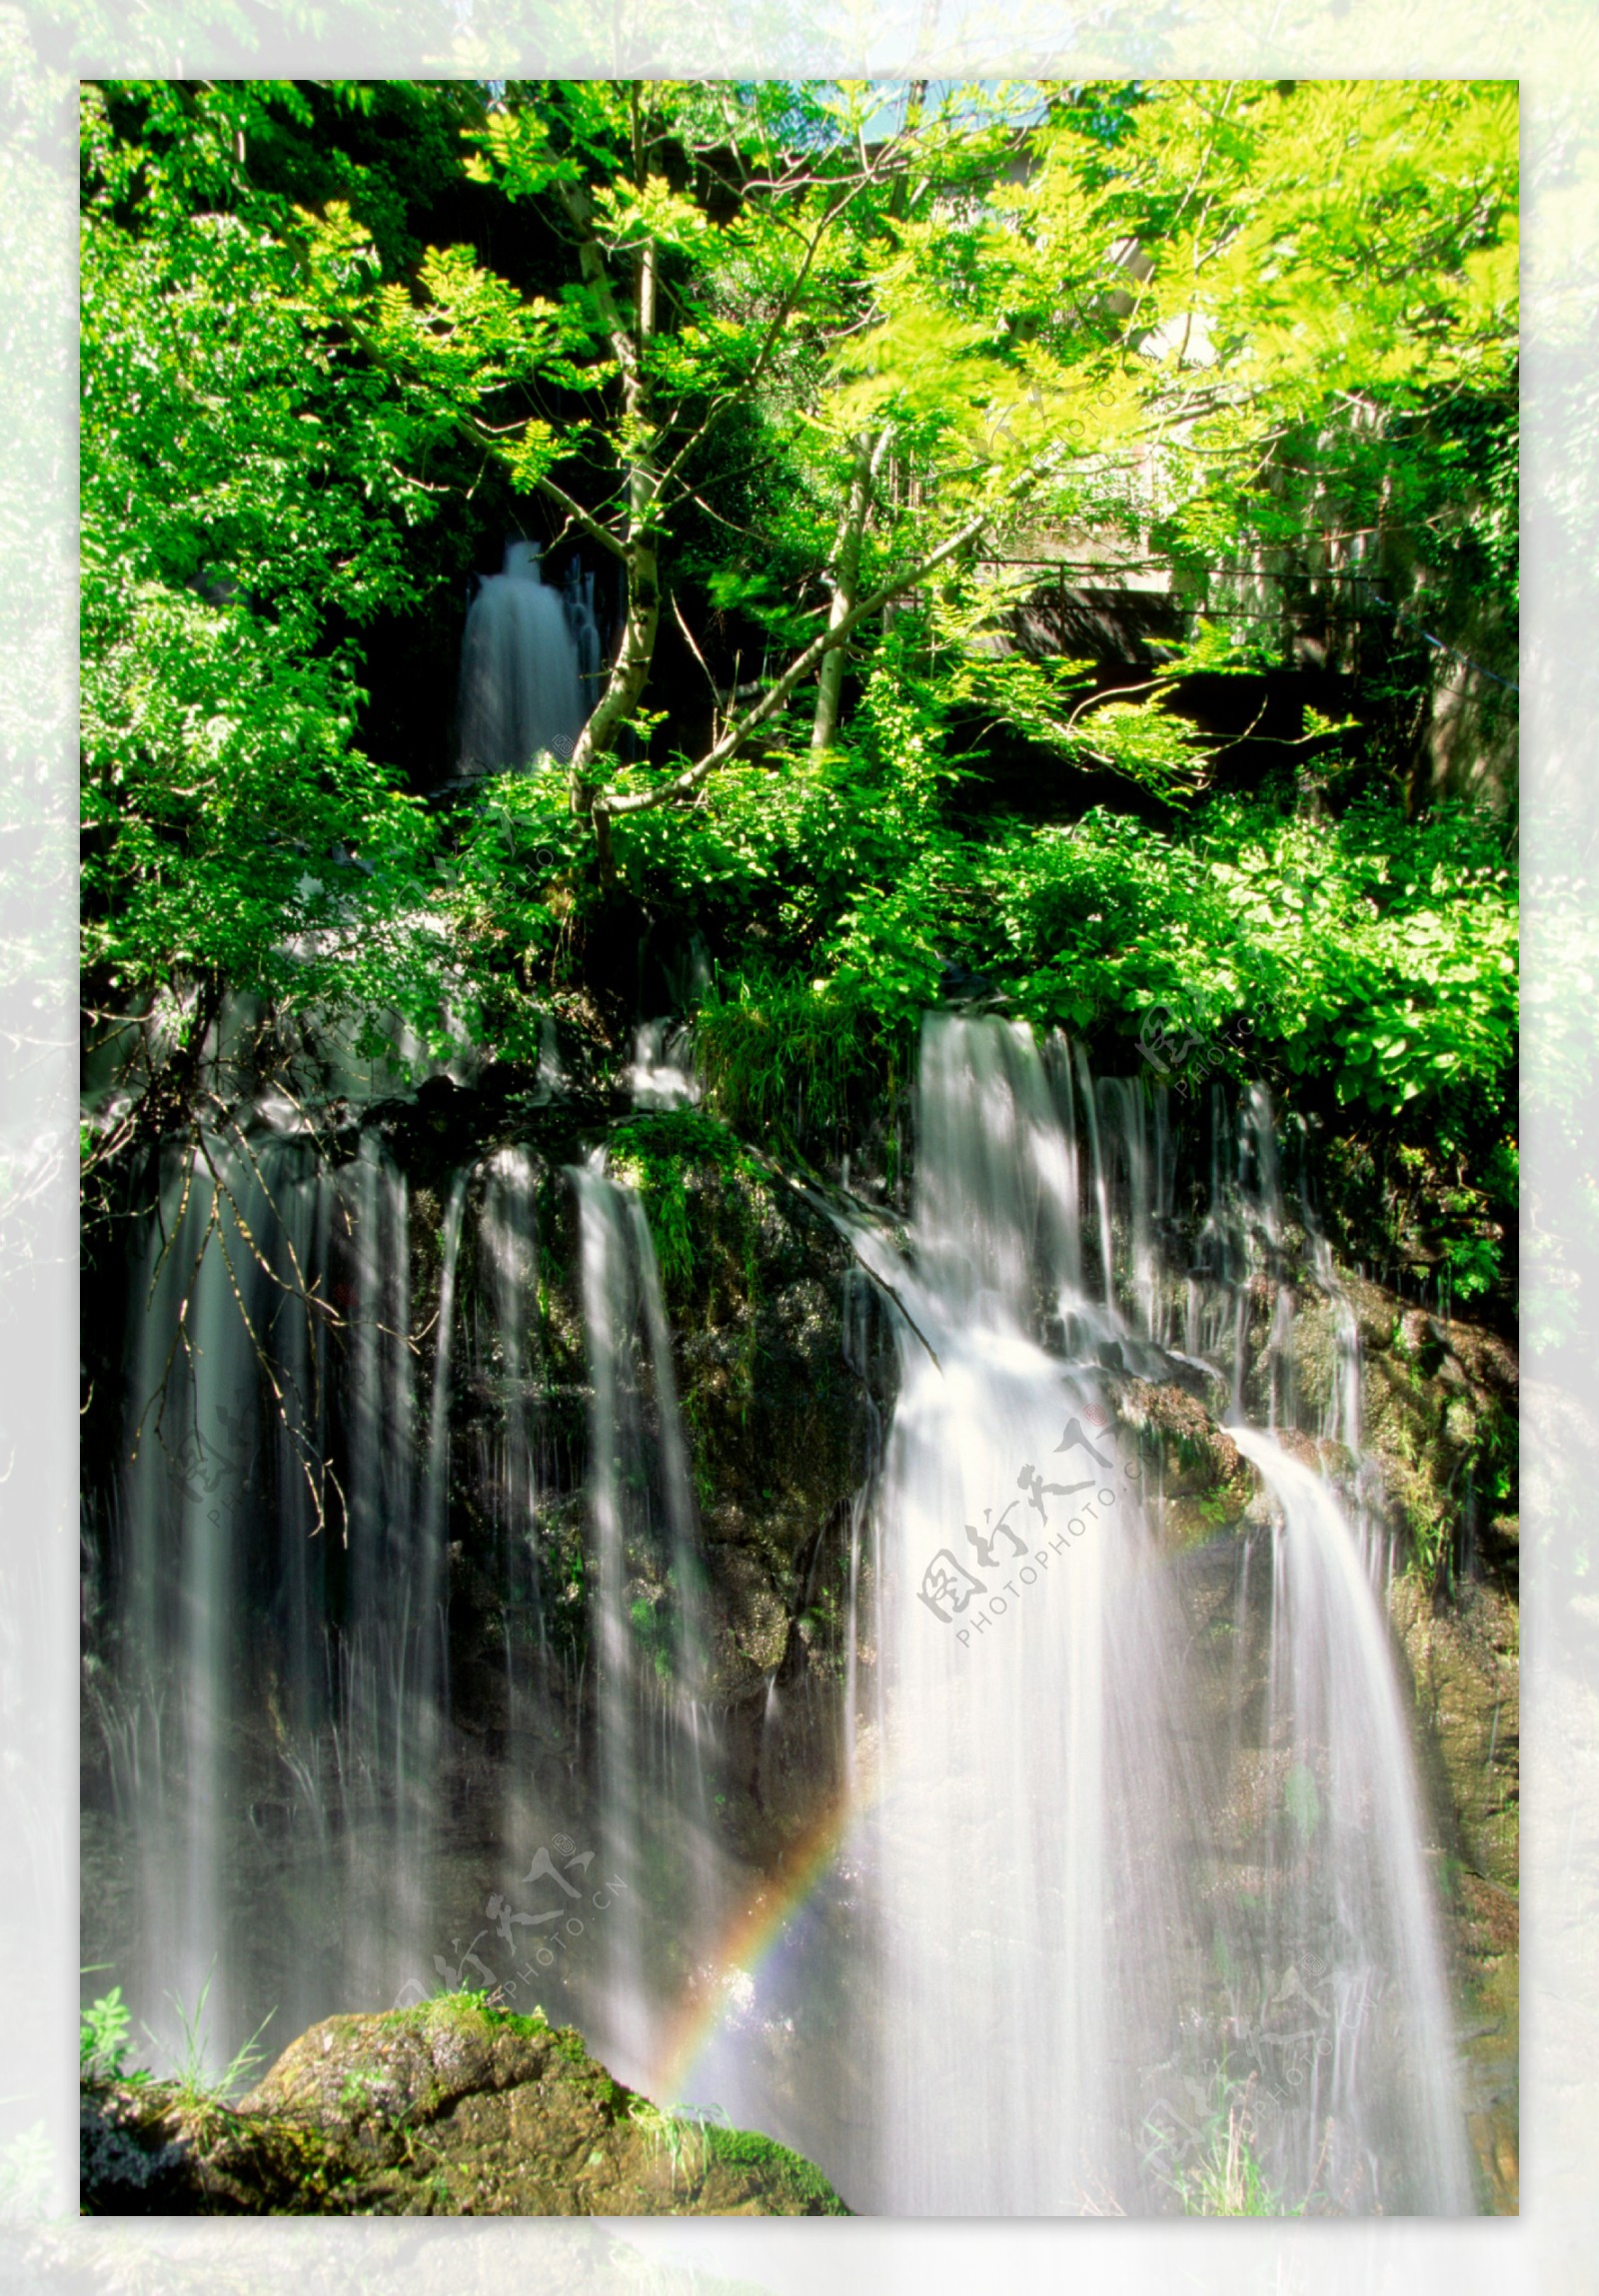 林间彩虹瀑布图片